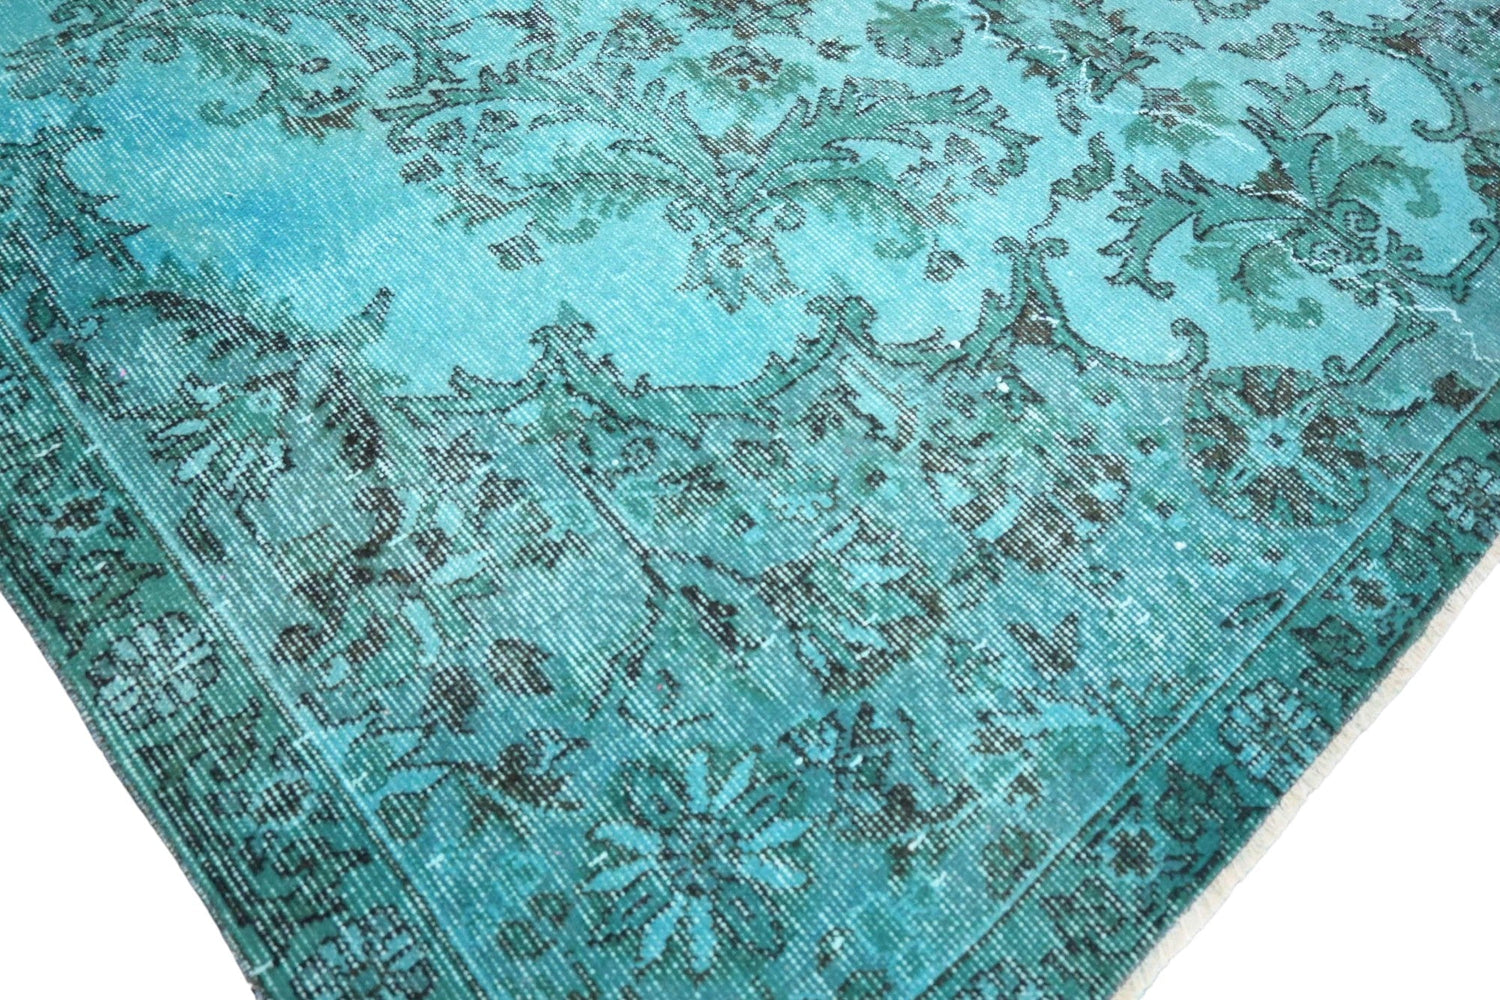 Turquoise vintage vloerkleed - E499 - Lavinta